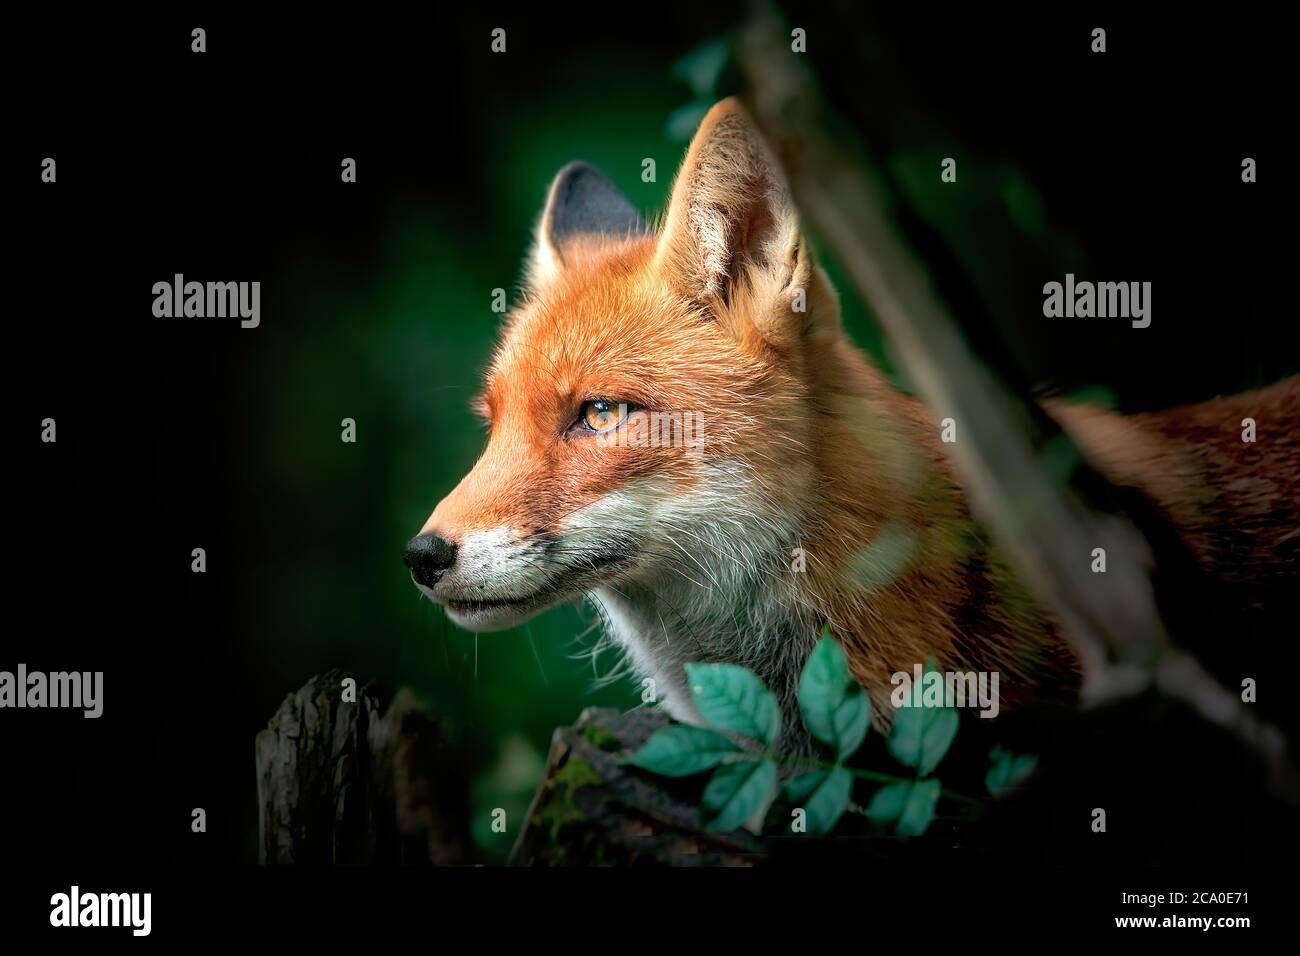 Primo piano di una volpe rossa e bianca, vista laterale, dettaglio della testa di una volpe sulla caccia, National GEOGRAPHIC, la foto migliore. Foto Stock